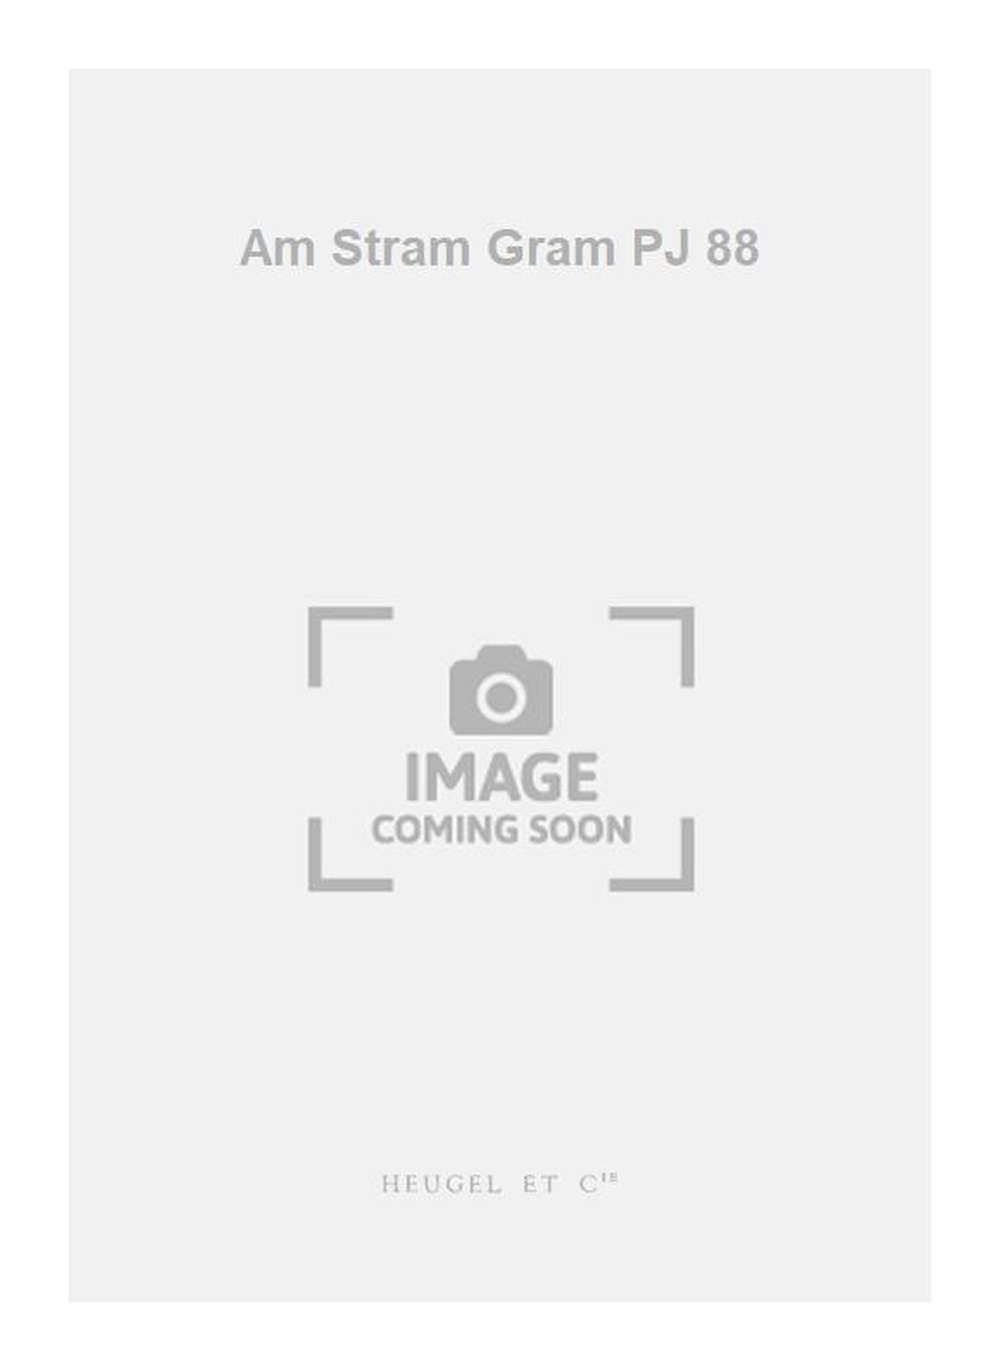 Pierre-Yves Level: Am Stram Gram PJ 88